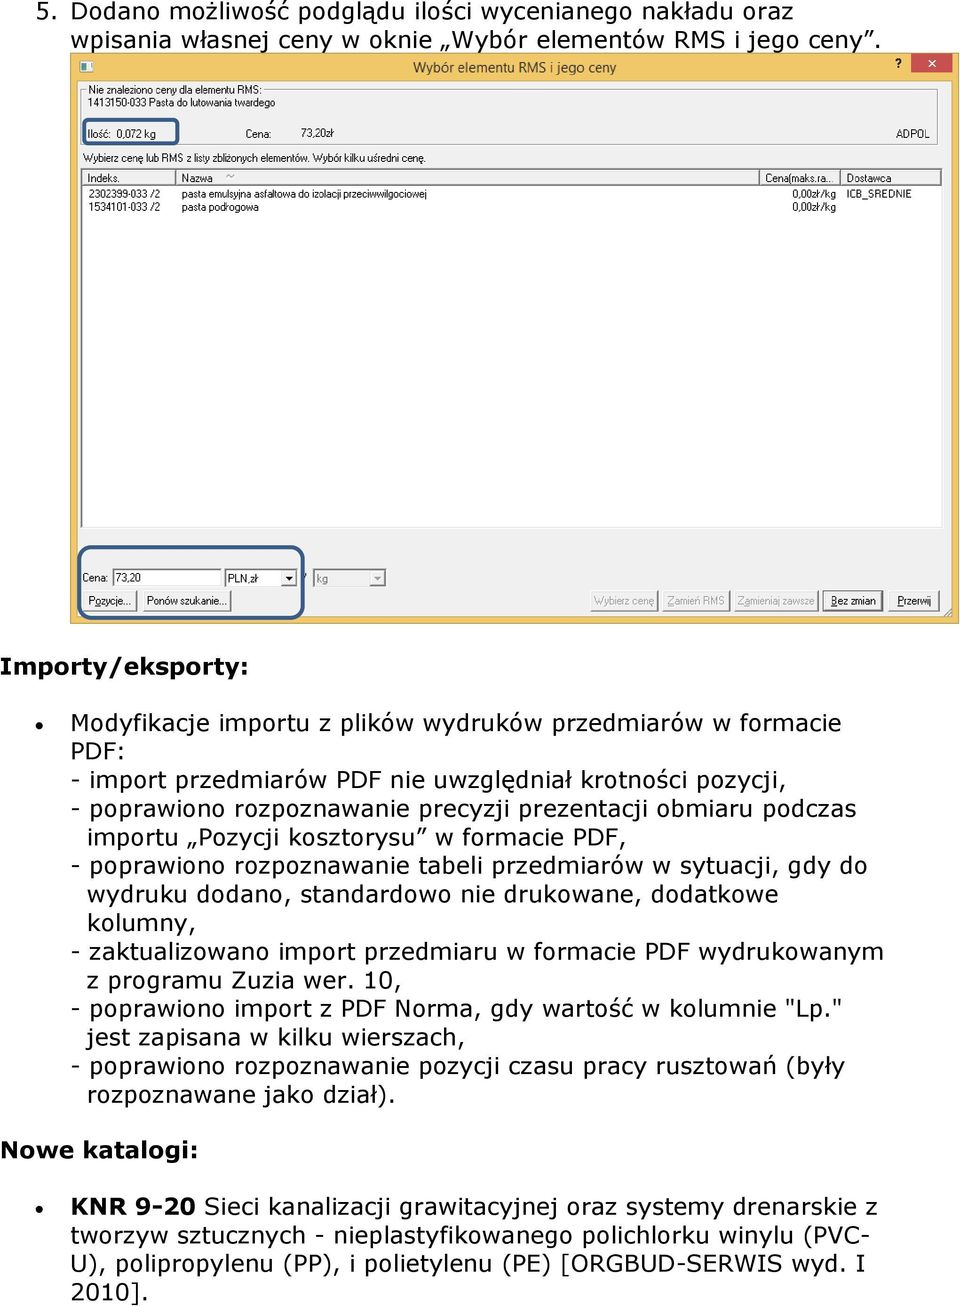 podczas importu Pozycji kosztorysu w formacie PDF, - poprawiono rozpoznawanie tabeli przedmiarów w sytuacji, gdy do wydruku dodano, standardowo nie drukowane, dodatkowe kolumny, - zaktualizowano